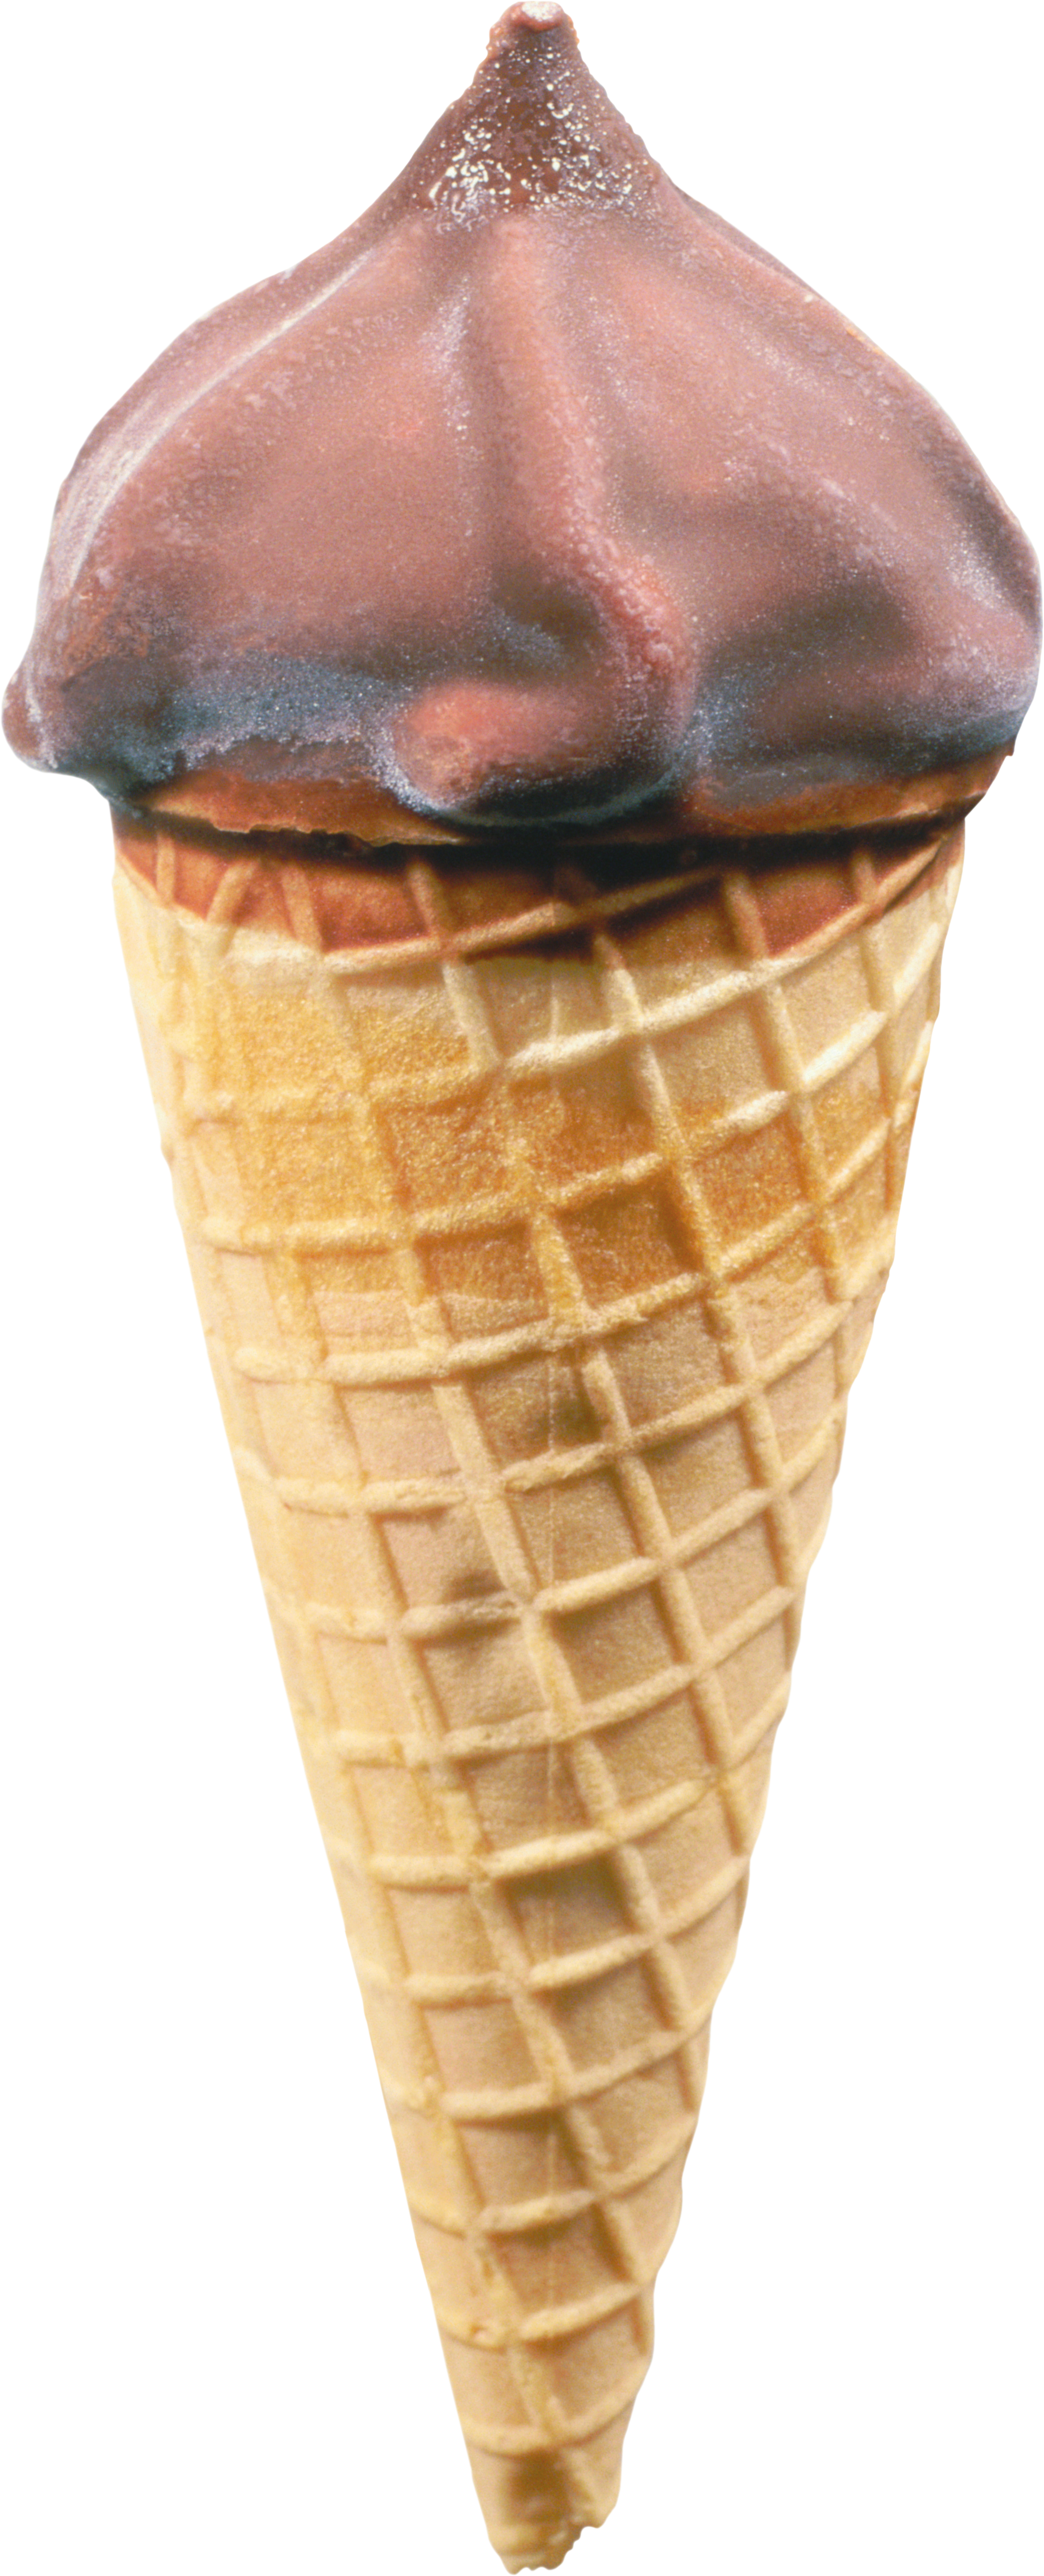 ไอศกรีม